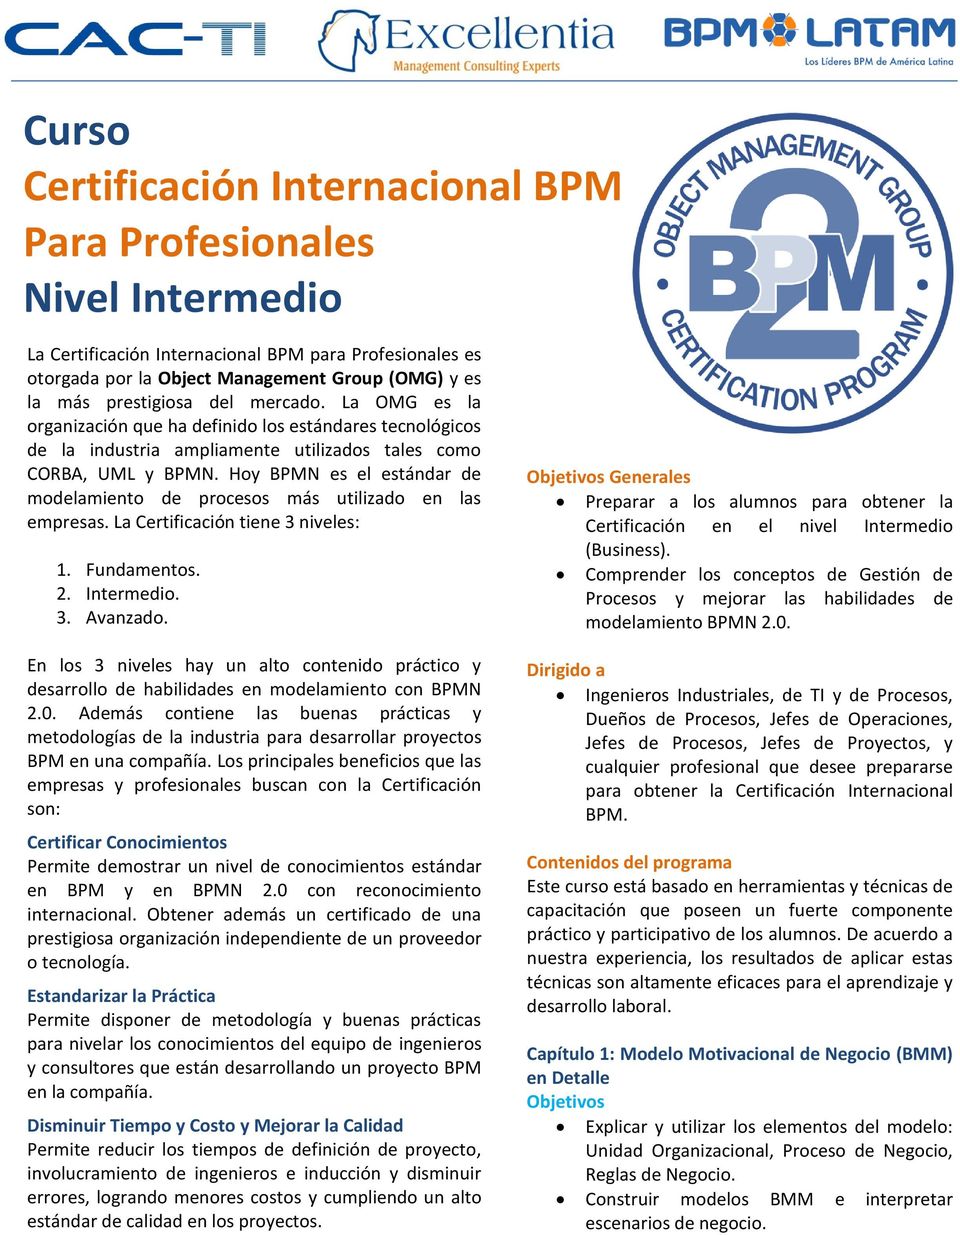 Hoy BPMN es el estándar de modelamiento de procesos más utilizado en las empresas. La Certificación tiene 3 niveles: 1. Fundamentos. 2. Intermedio. 3. Avanzado.